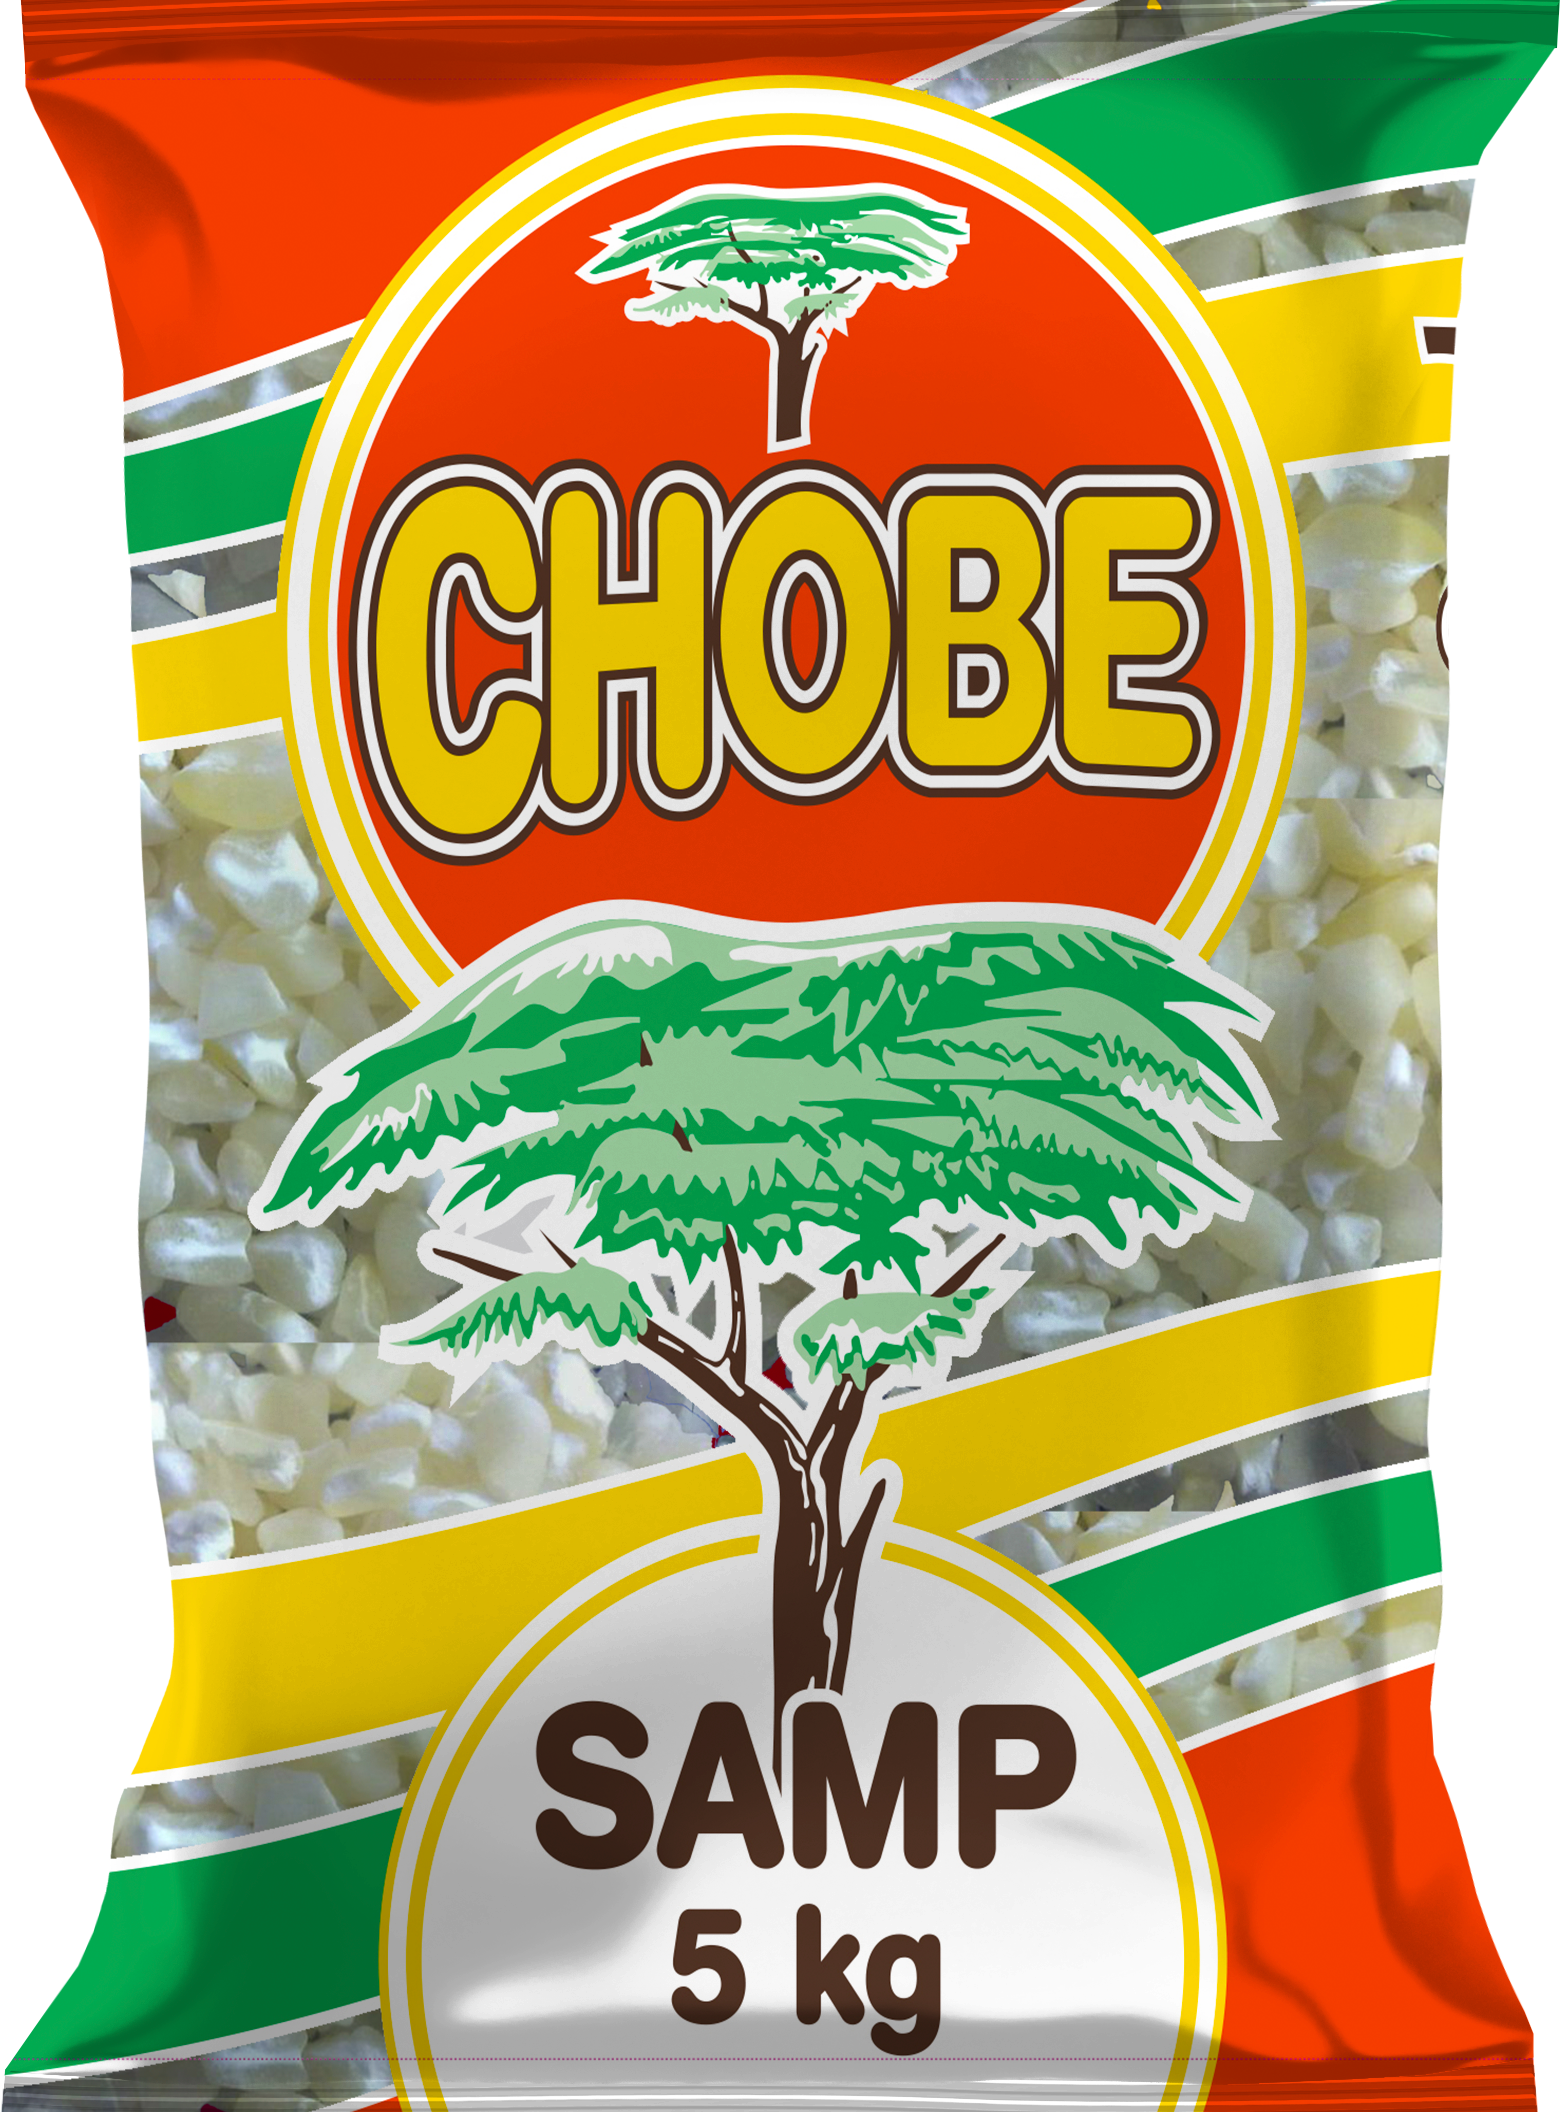 Chobe Samp 5 Kg